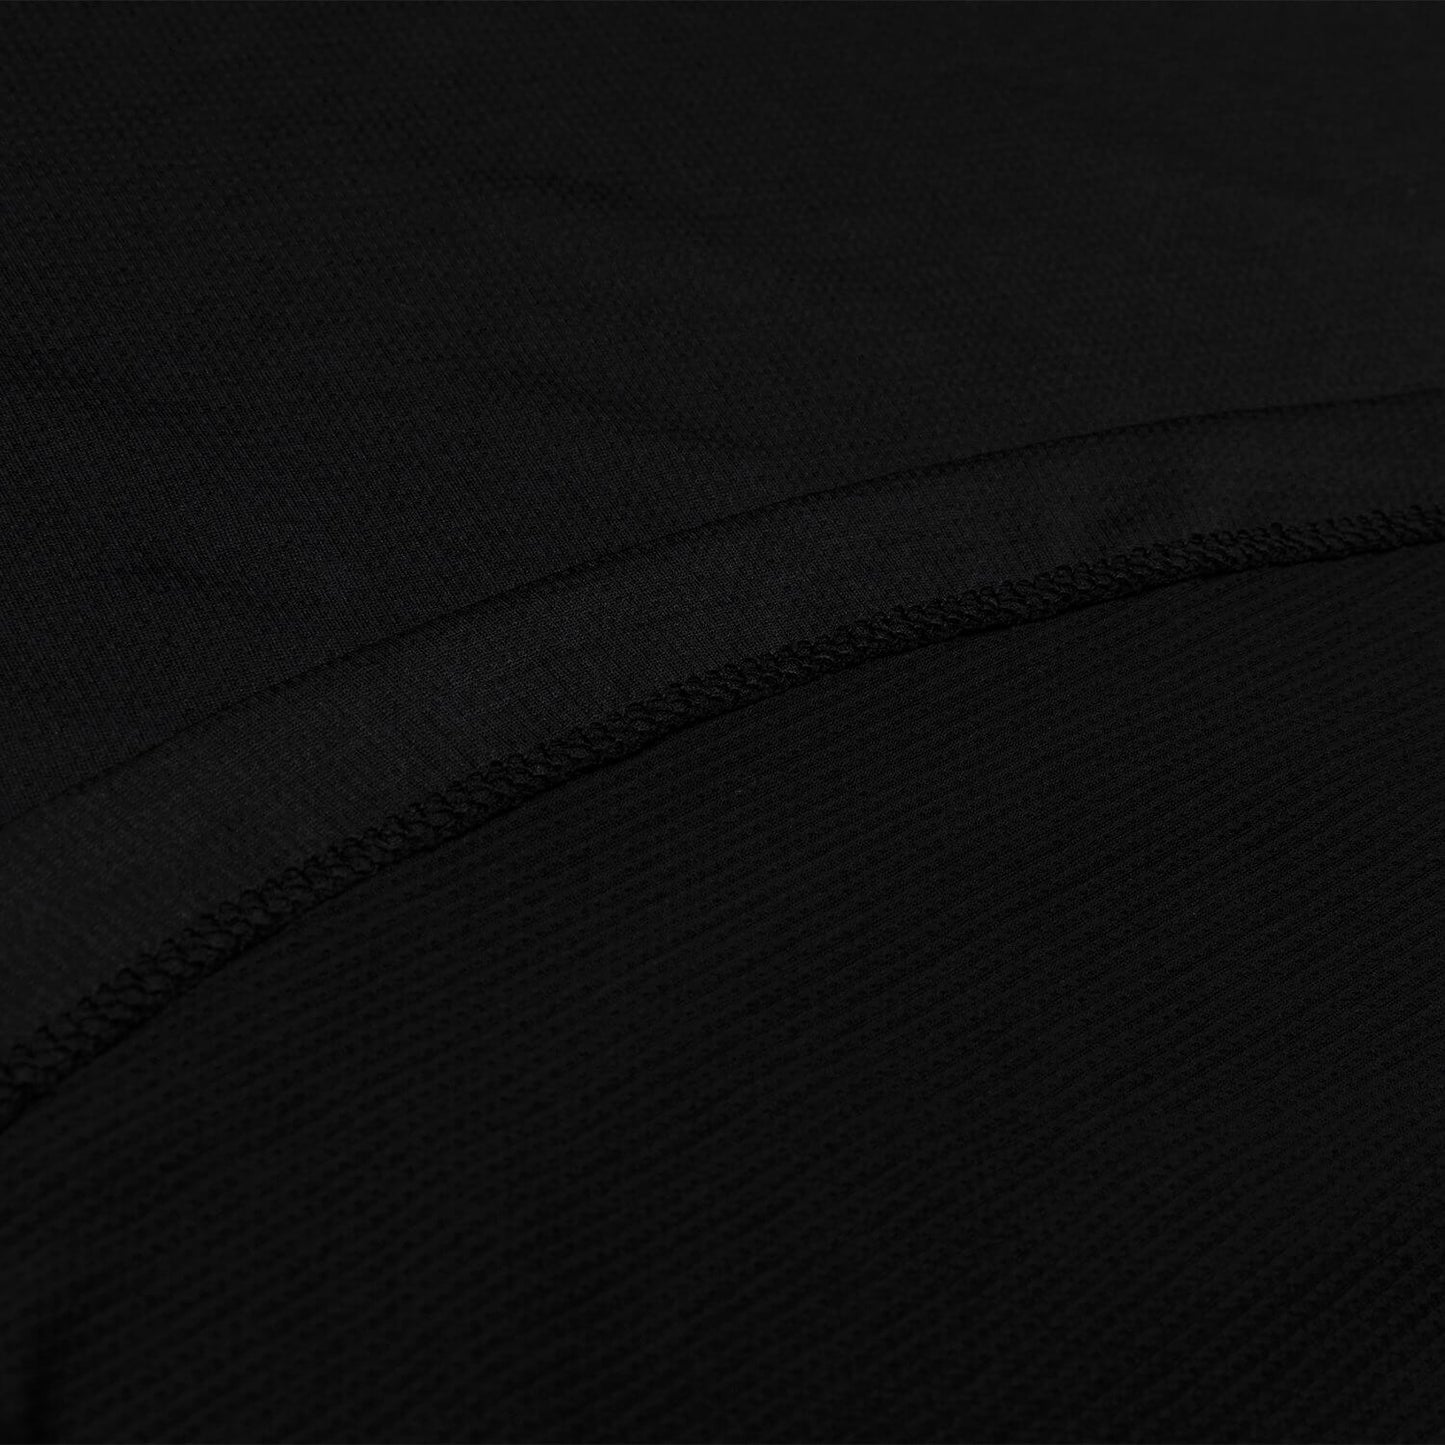 ランニングTシャツ XGRSS08 Wmns Clean Combat Tee - Black [レディーズ]